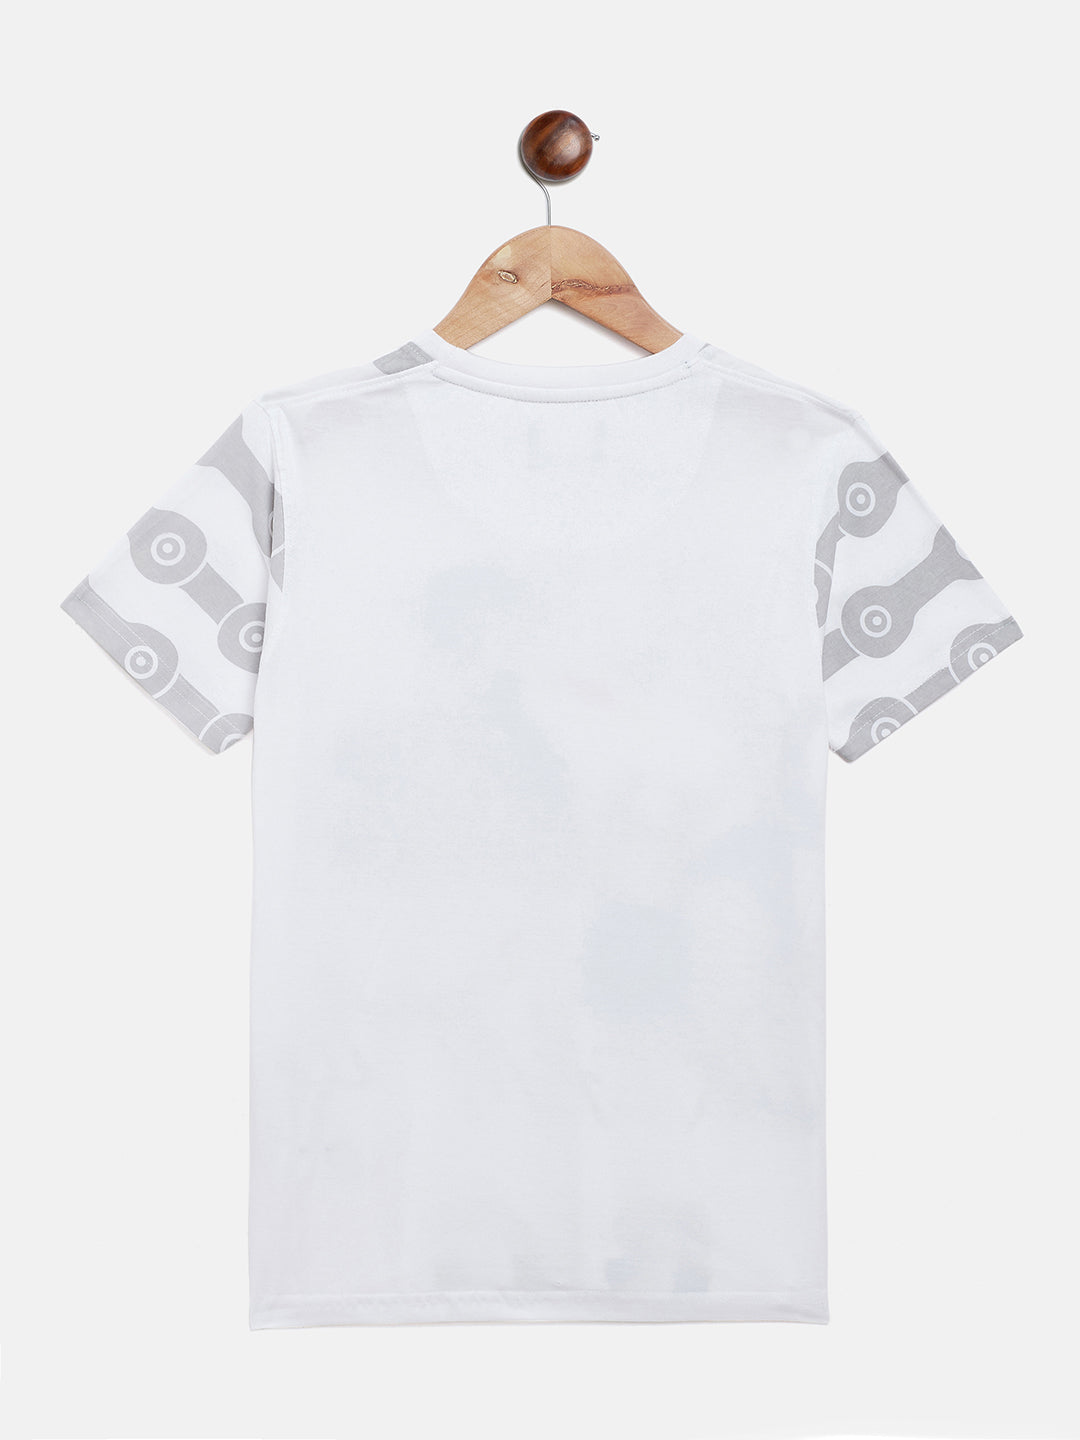 Printed White T-shirt - Boys T-Shirts